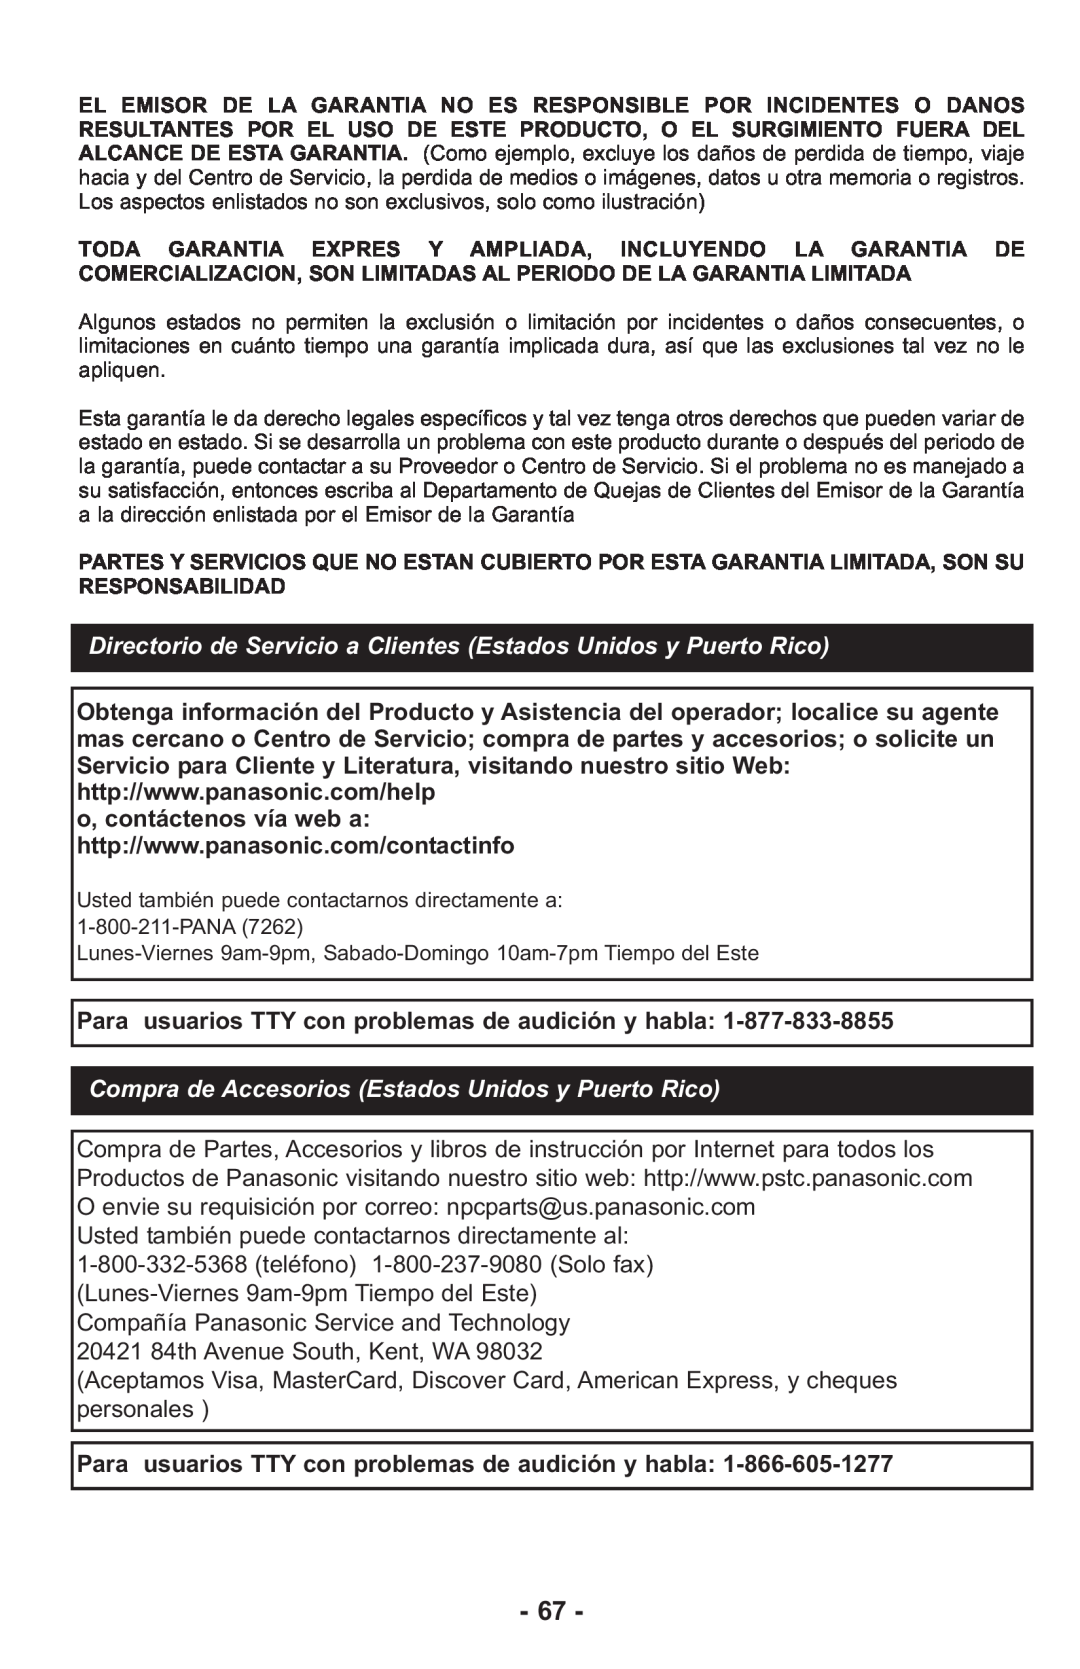 Panasonic MCUL815 operating instructions Compra de Accesorios Estados Unidos y Puerto Rico 